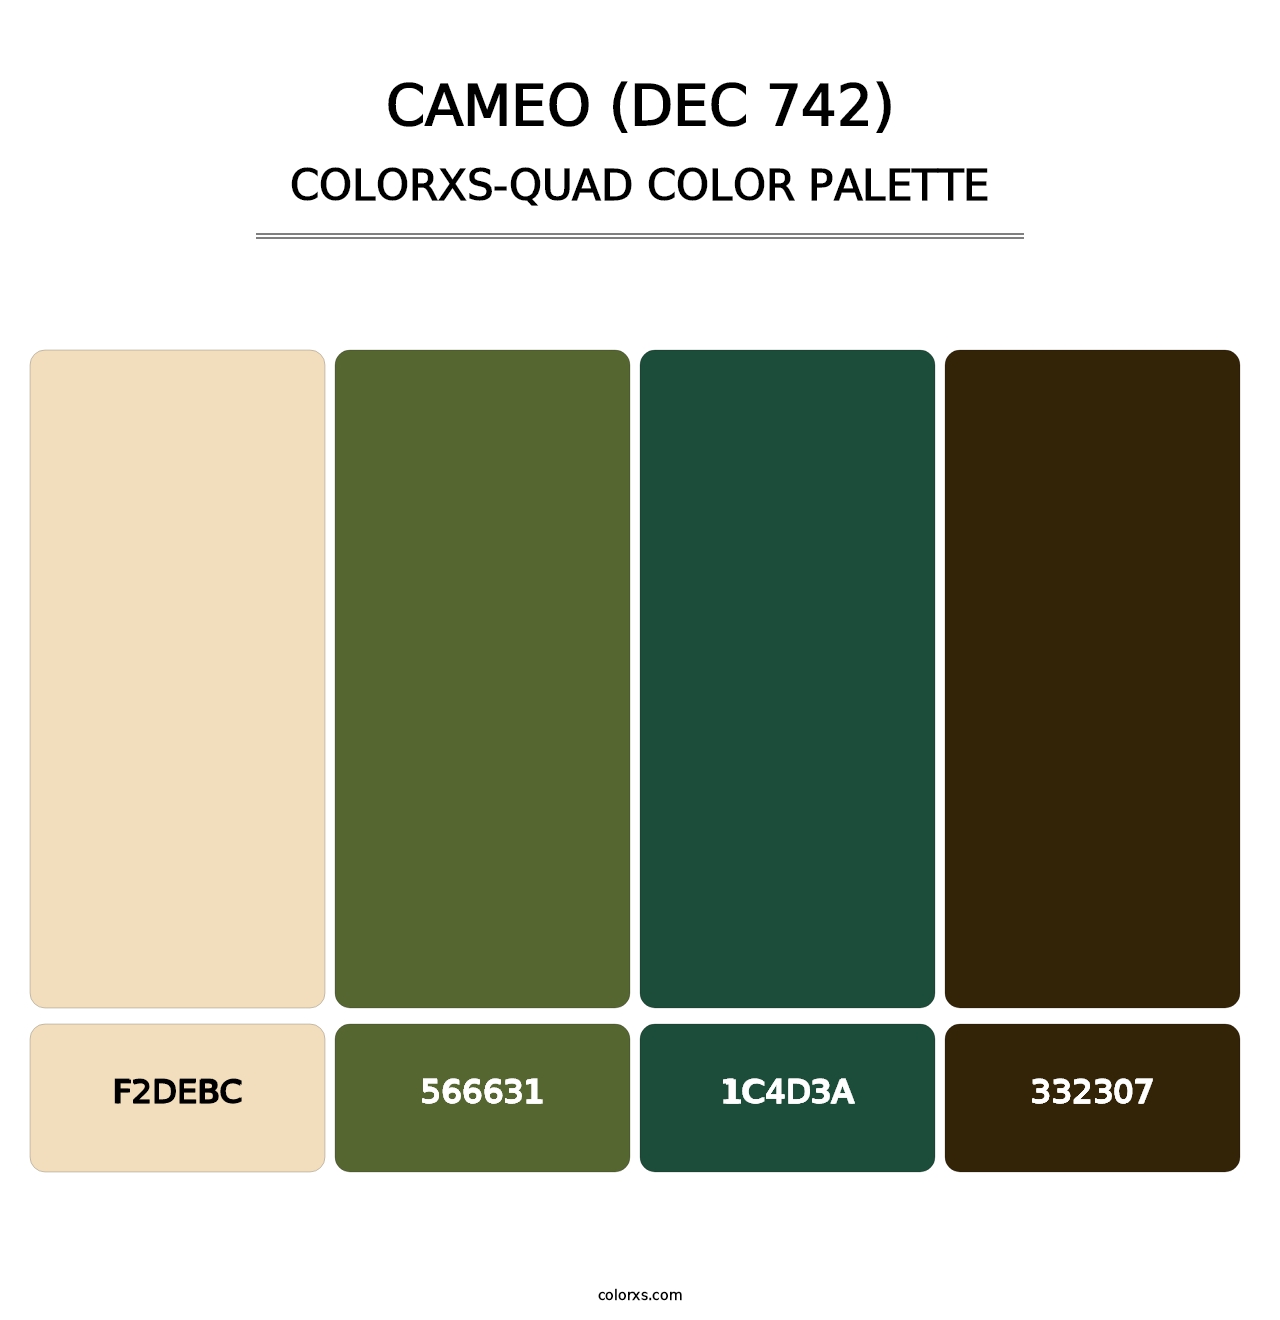 Cameo (DEC 742) - Colorxs Quad Palette